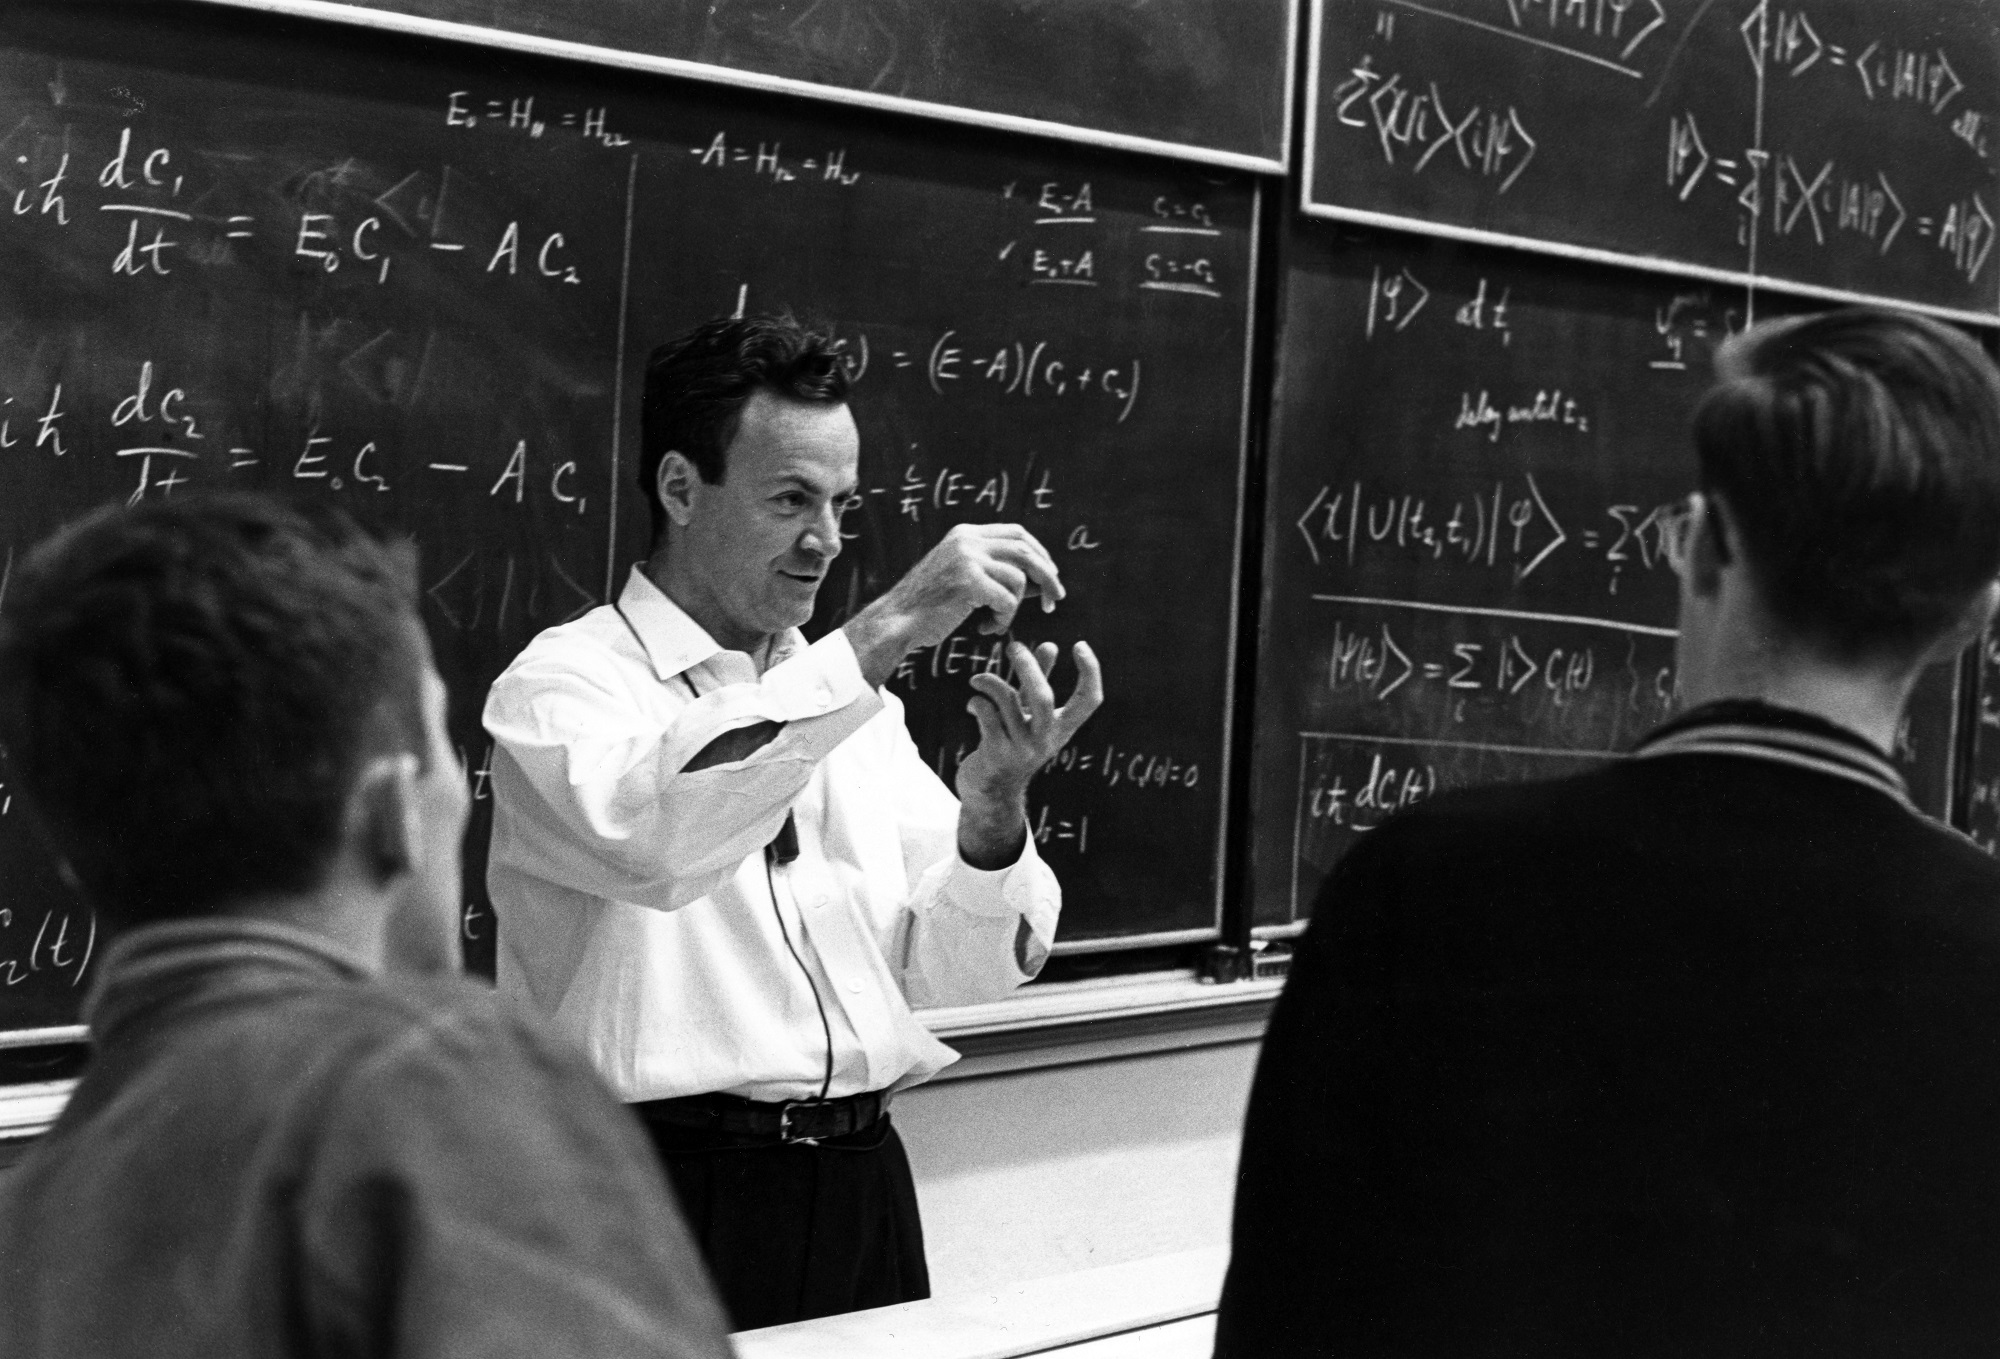 Richard Feynman kvantummechanika-előadása a Kaliforniai Műszaki Egyetemen (Caltech), 1963-ban